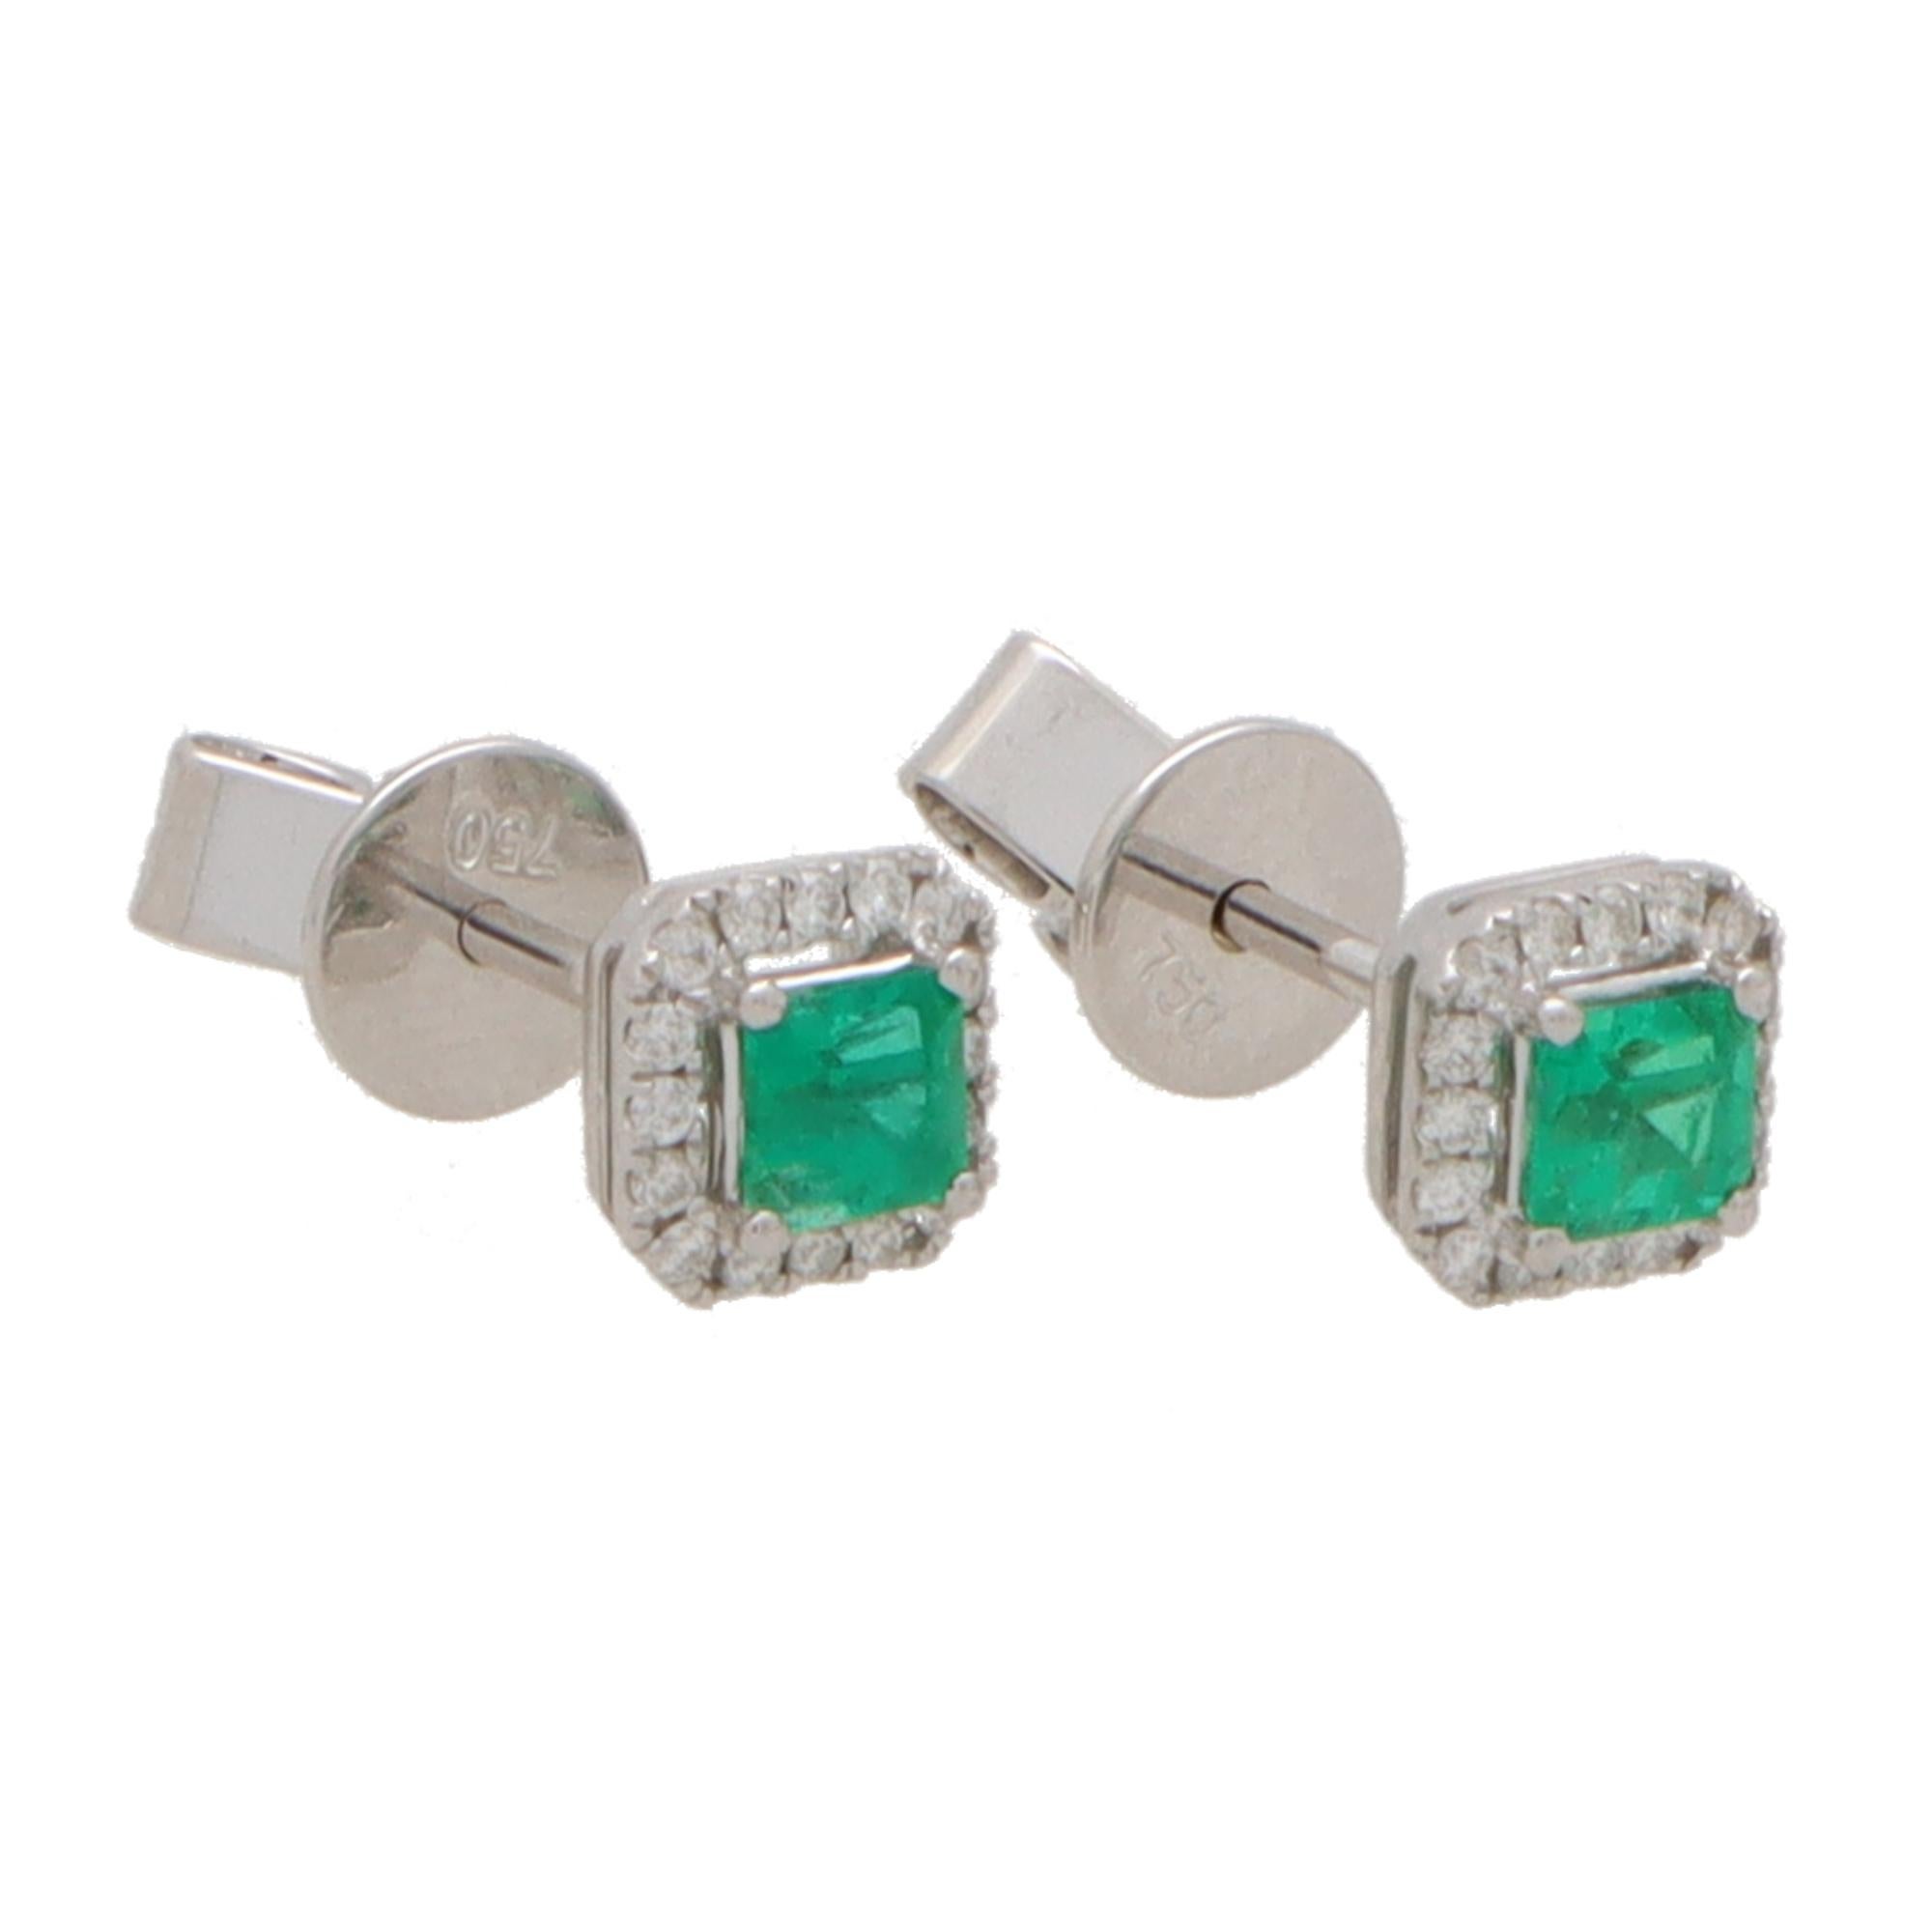  Ein wunderschönes Paar leuchtend grüner Smaragd- und Diamant-Cluster-Ohrringe aus 18 Karat Weißgold.

Jeder Ohrring besteht aus einer quadratischen Form und in der Mitte befindet sich ein wunderschöner grüner Smaragd im Quadratschliff, der mit vier